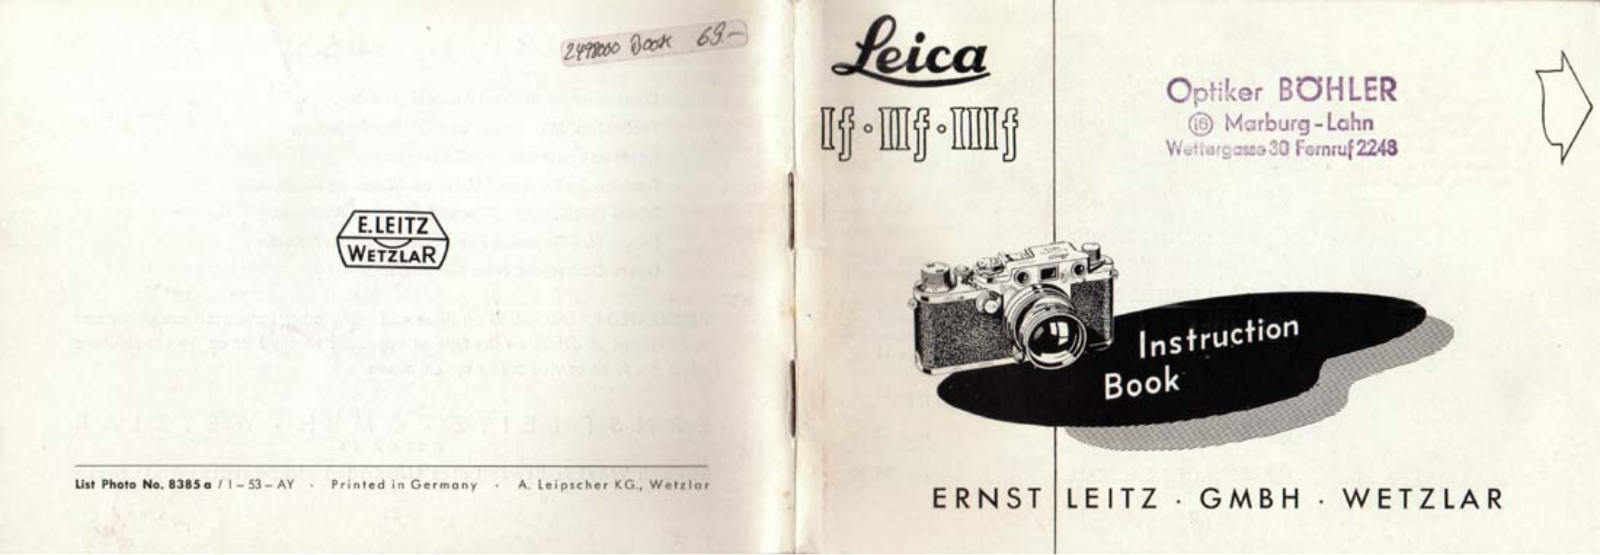 Leica If, IIf, IIIf Downloadable Instruction Book